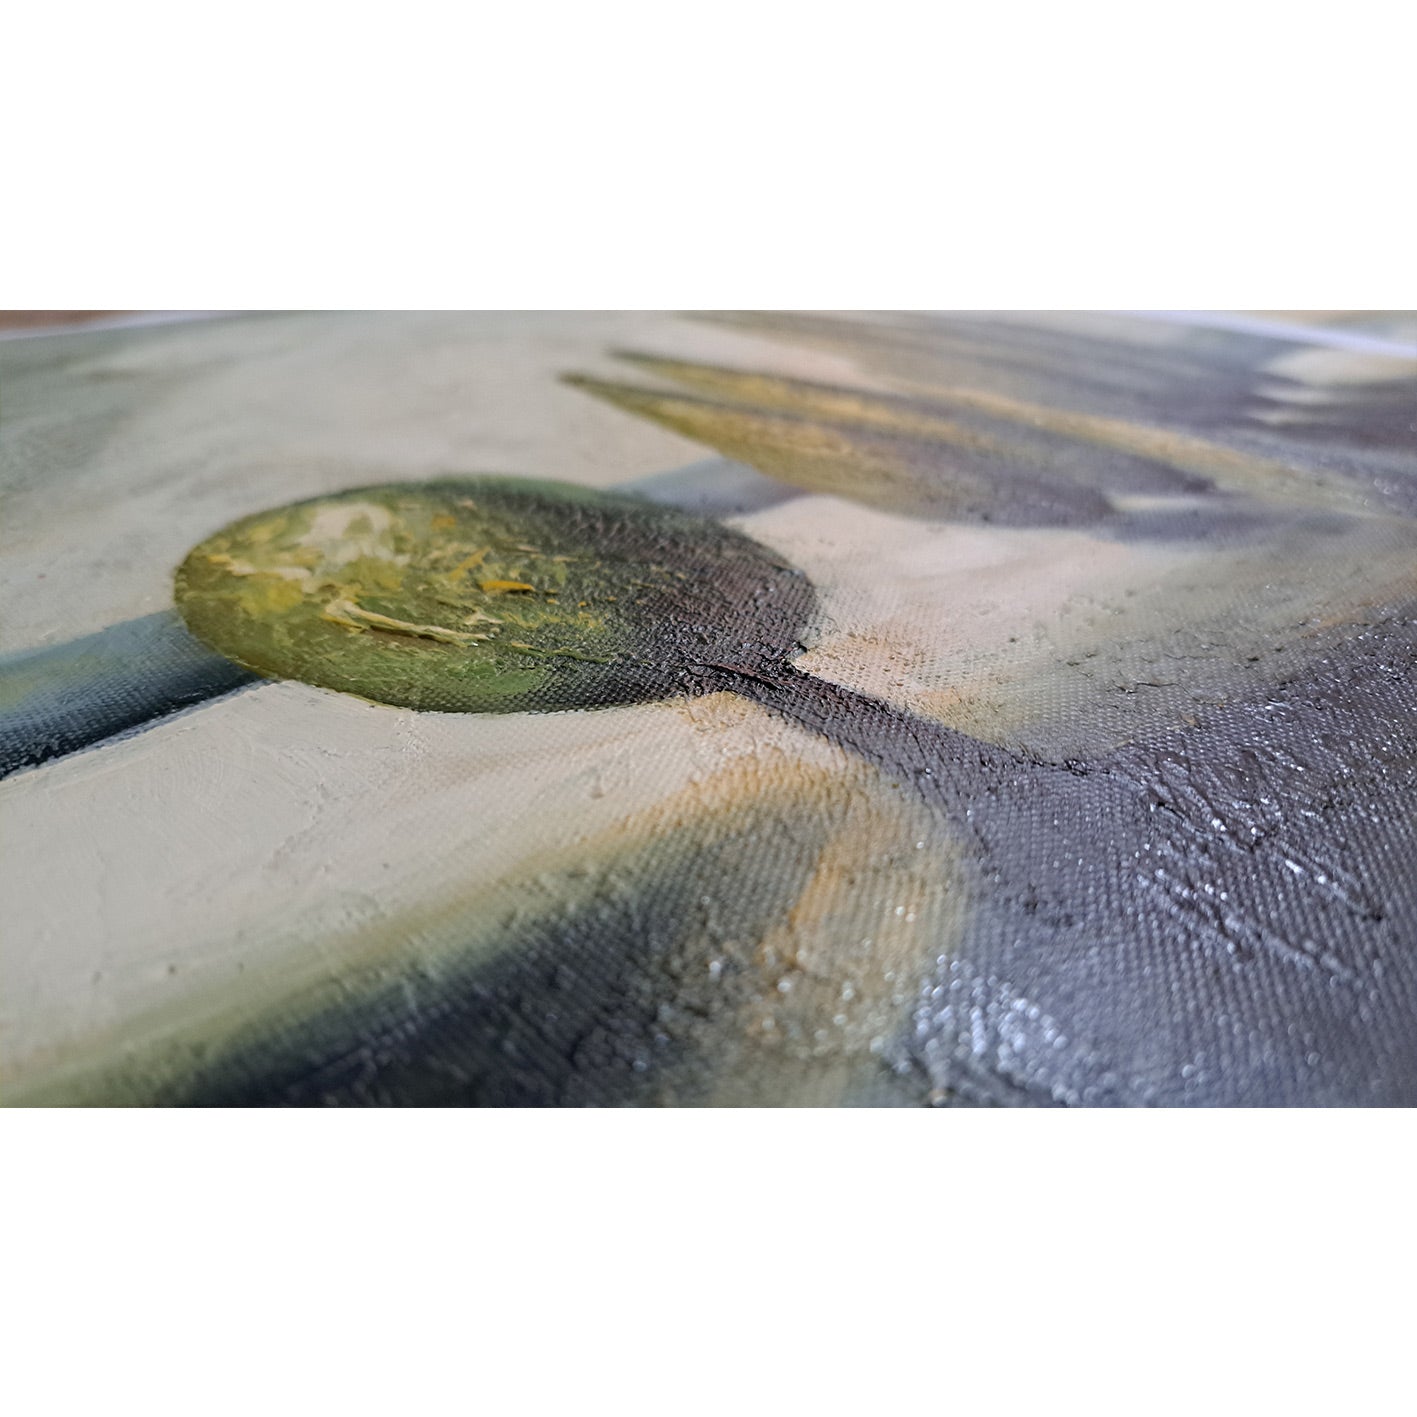 Direction Landscape Diptych Painting 50X60 cm [2 pieces]